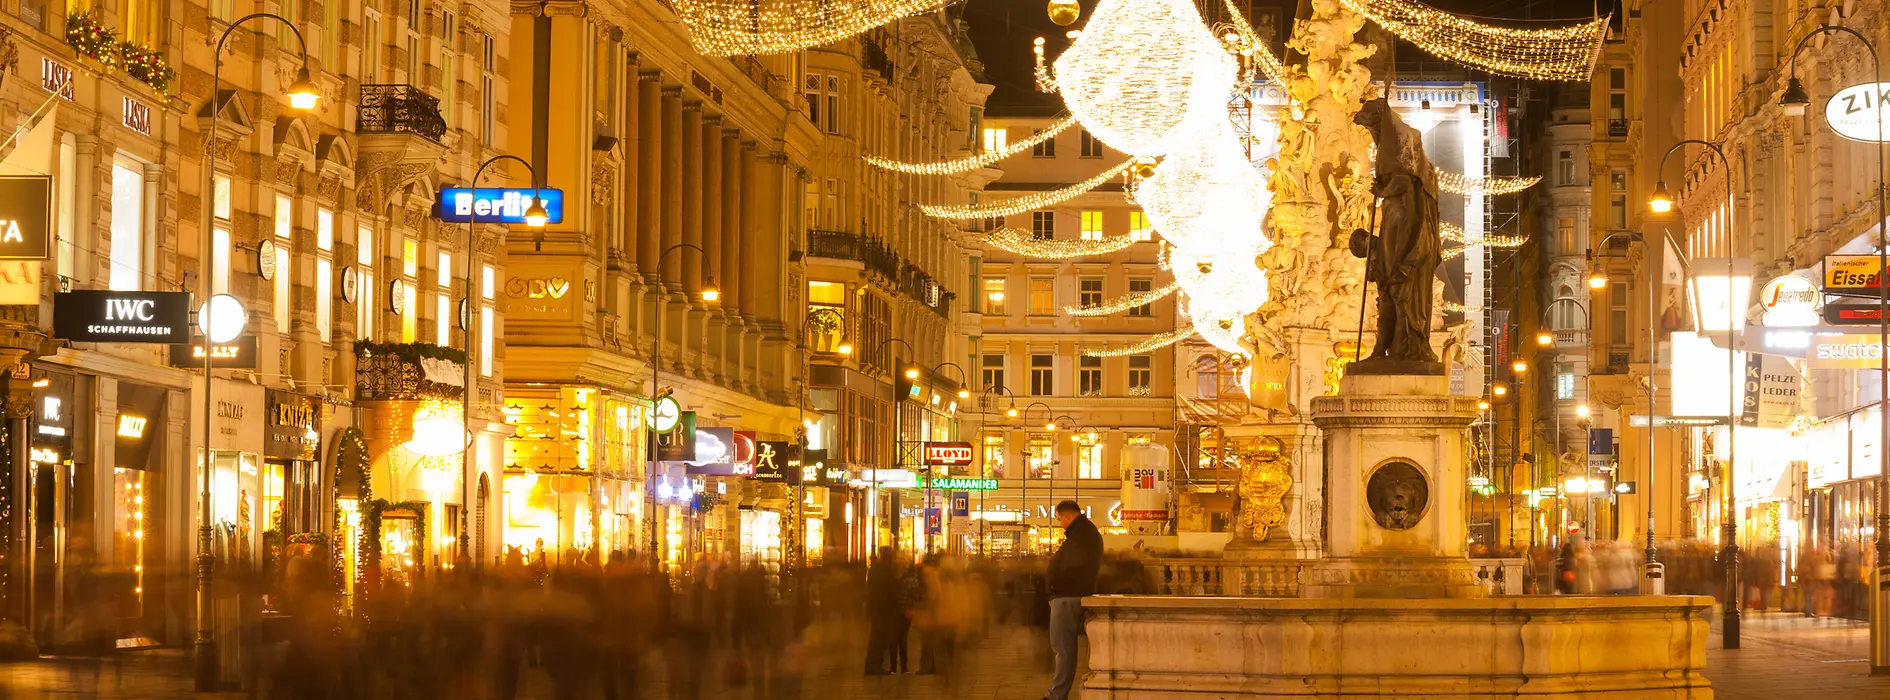 Luces navideñas en una calle comercial de Viena